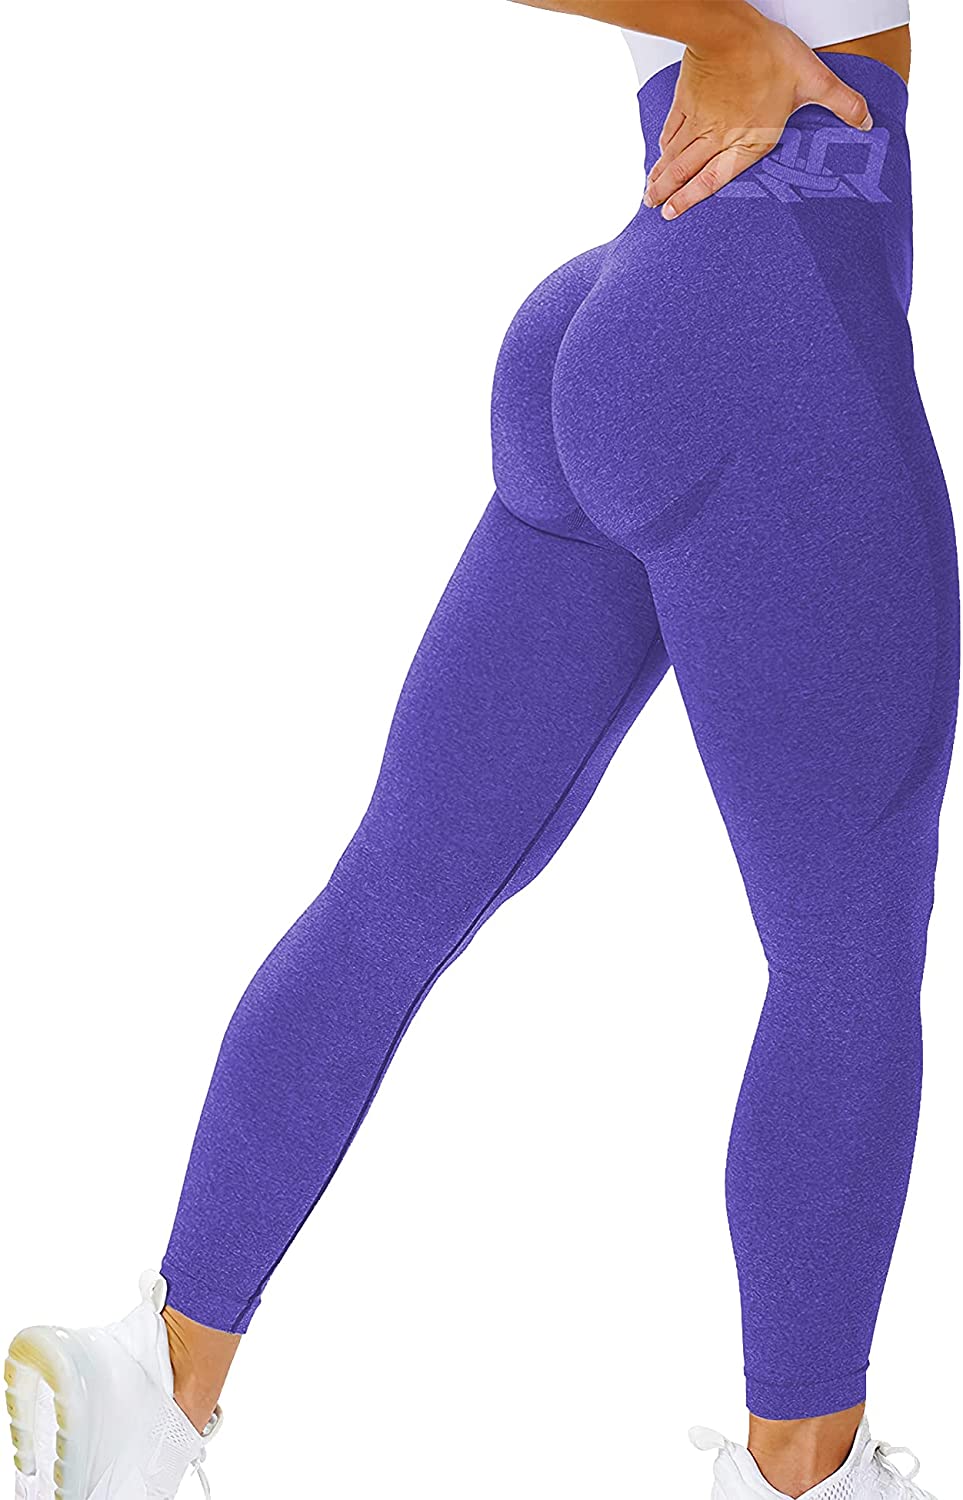 Buy OVESPORT Seamless Leggings for Women Butt Lift High Waist Sexy